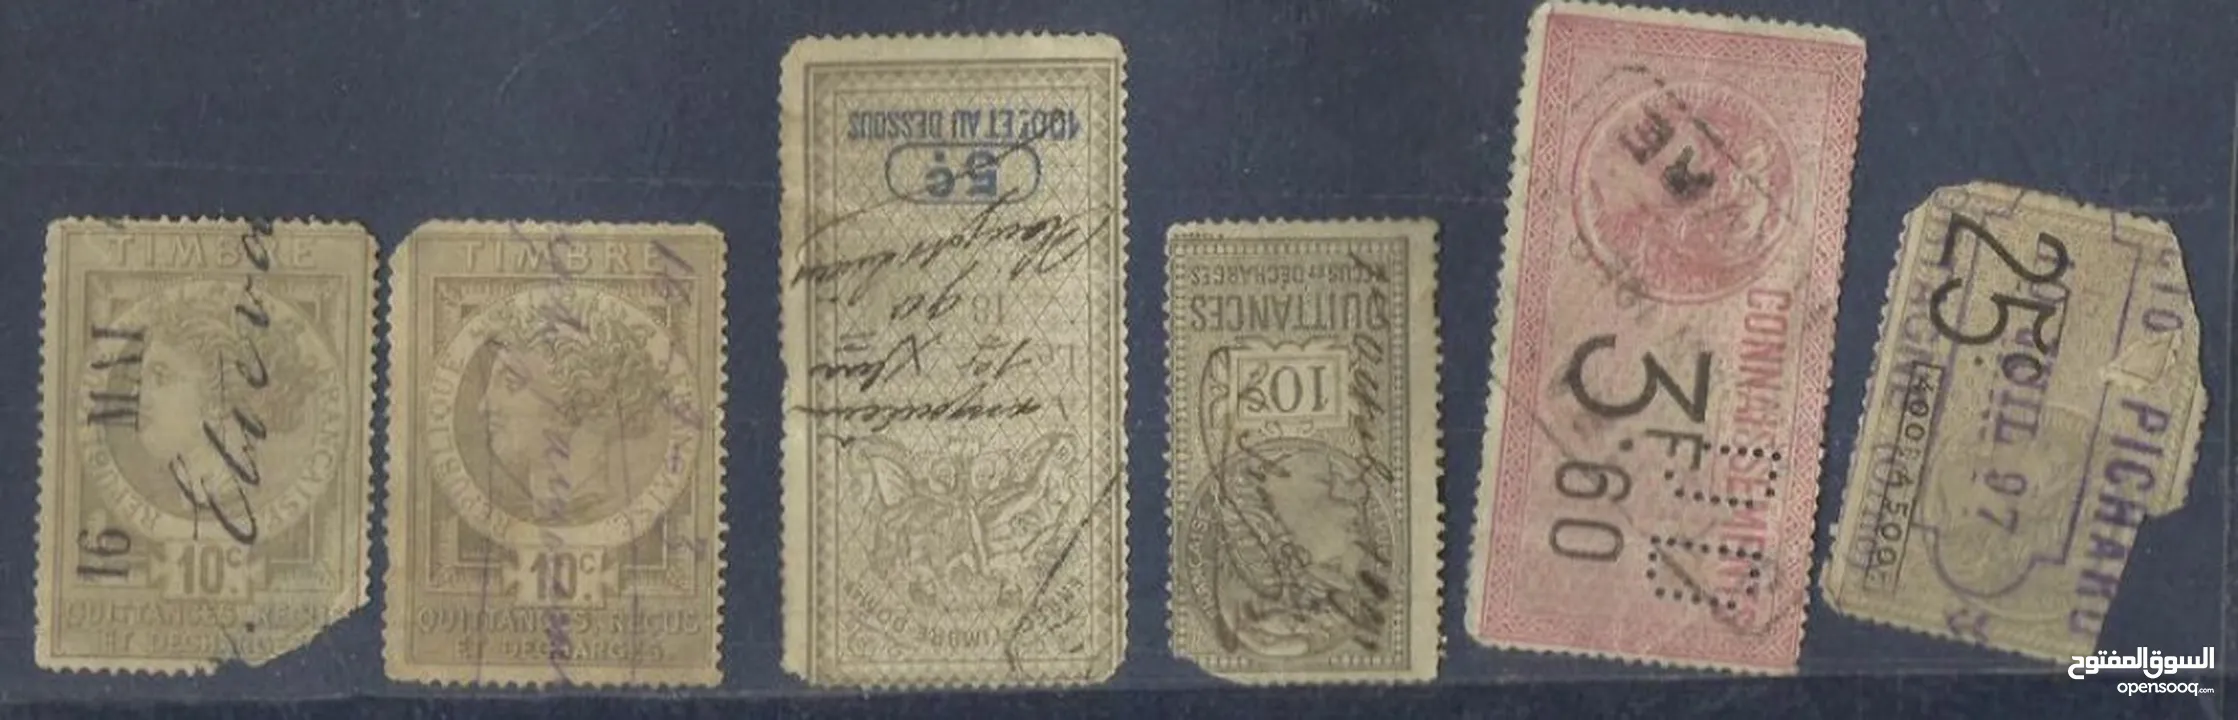 مجموعة طوابع نادرة جدا من اندر النوادر تابعه للجمارك الفرنسية عمرها 124 سنة